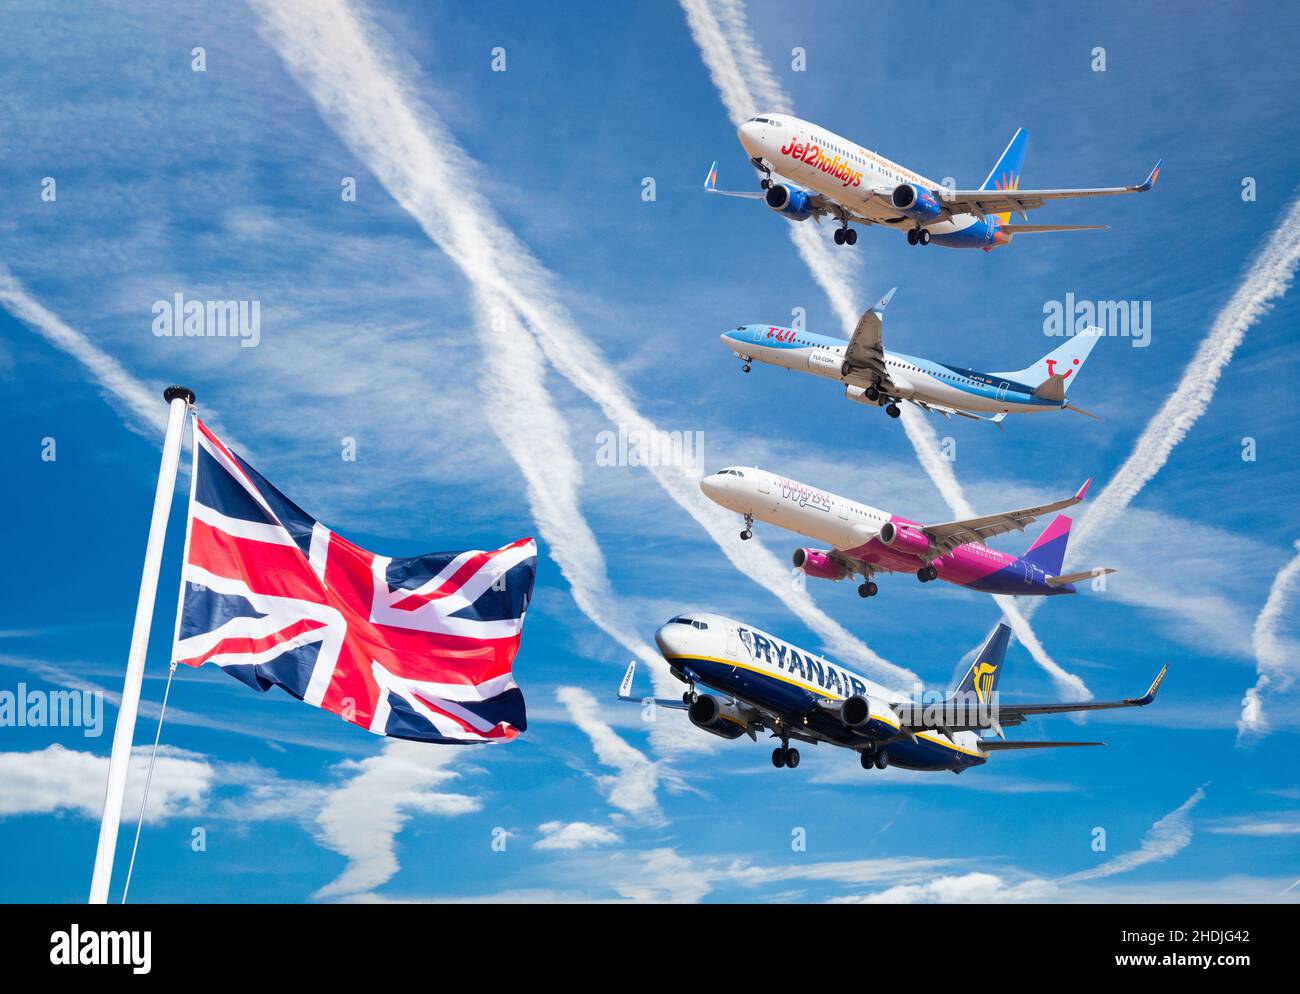 Jet2, TUI, Wizzair et Ryanair avions, avions, avions contre ciel avec des avions contrent avec le drapeau britannique.Industrie aérienne, tourisme, Covid récupération Banque D'Images